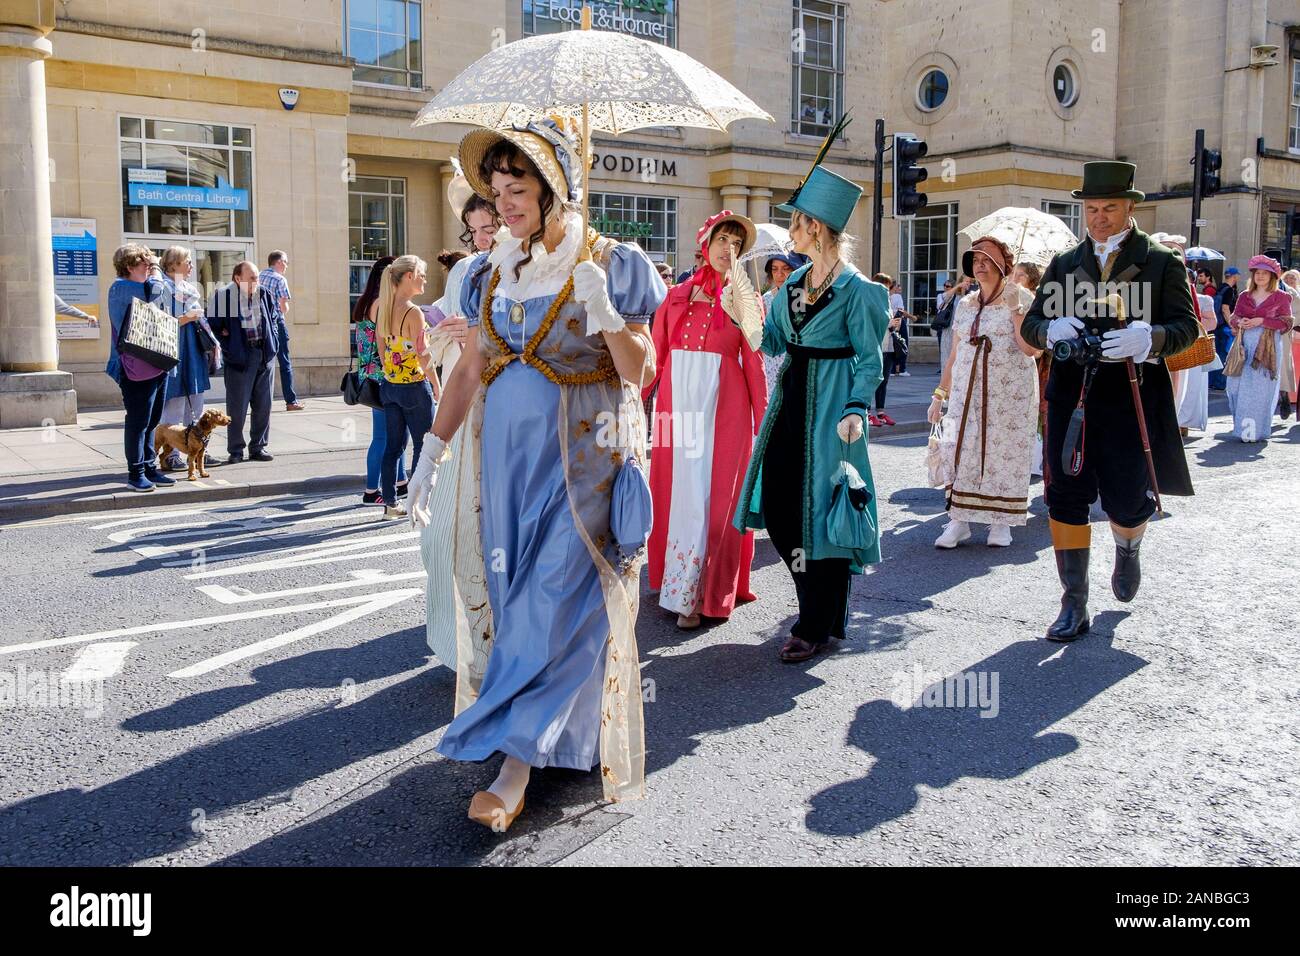 Jane Austen fans gekleidet in Regency Kostüme sind dargestellt in der Jane Austen Festival Regency kostümierten Promenade. Bath, England, UK 14-09-19 Stockfoto